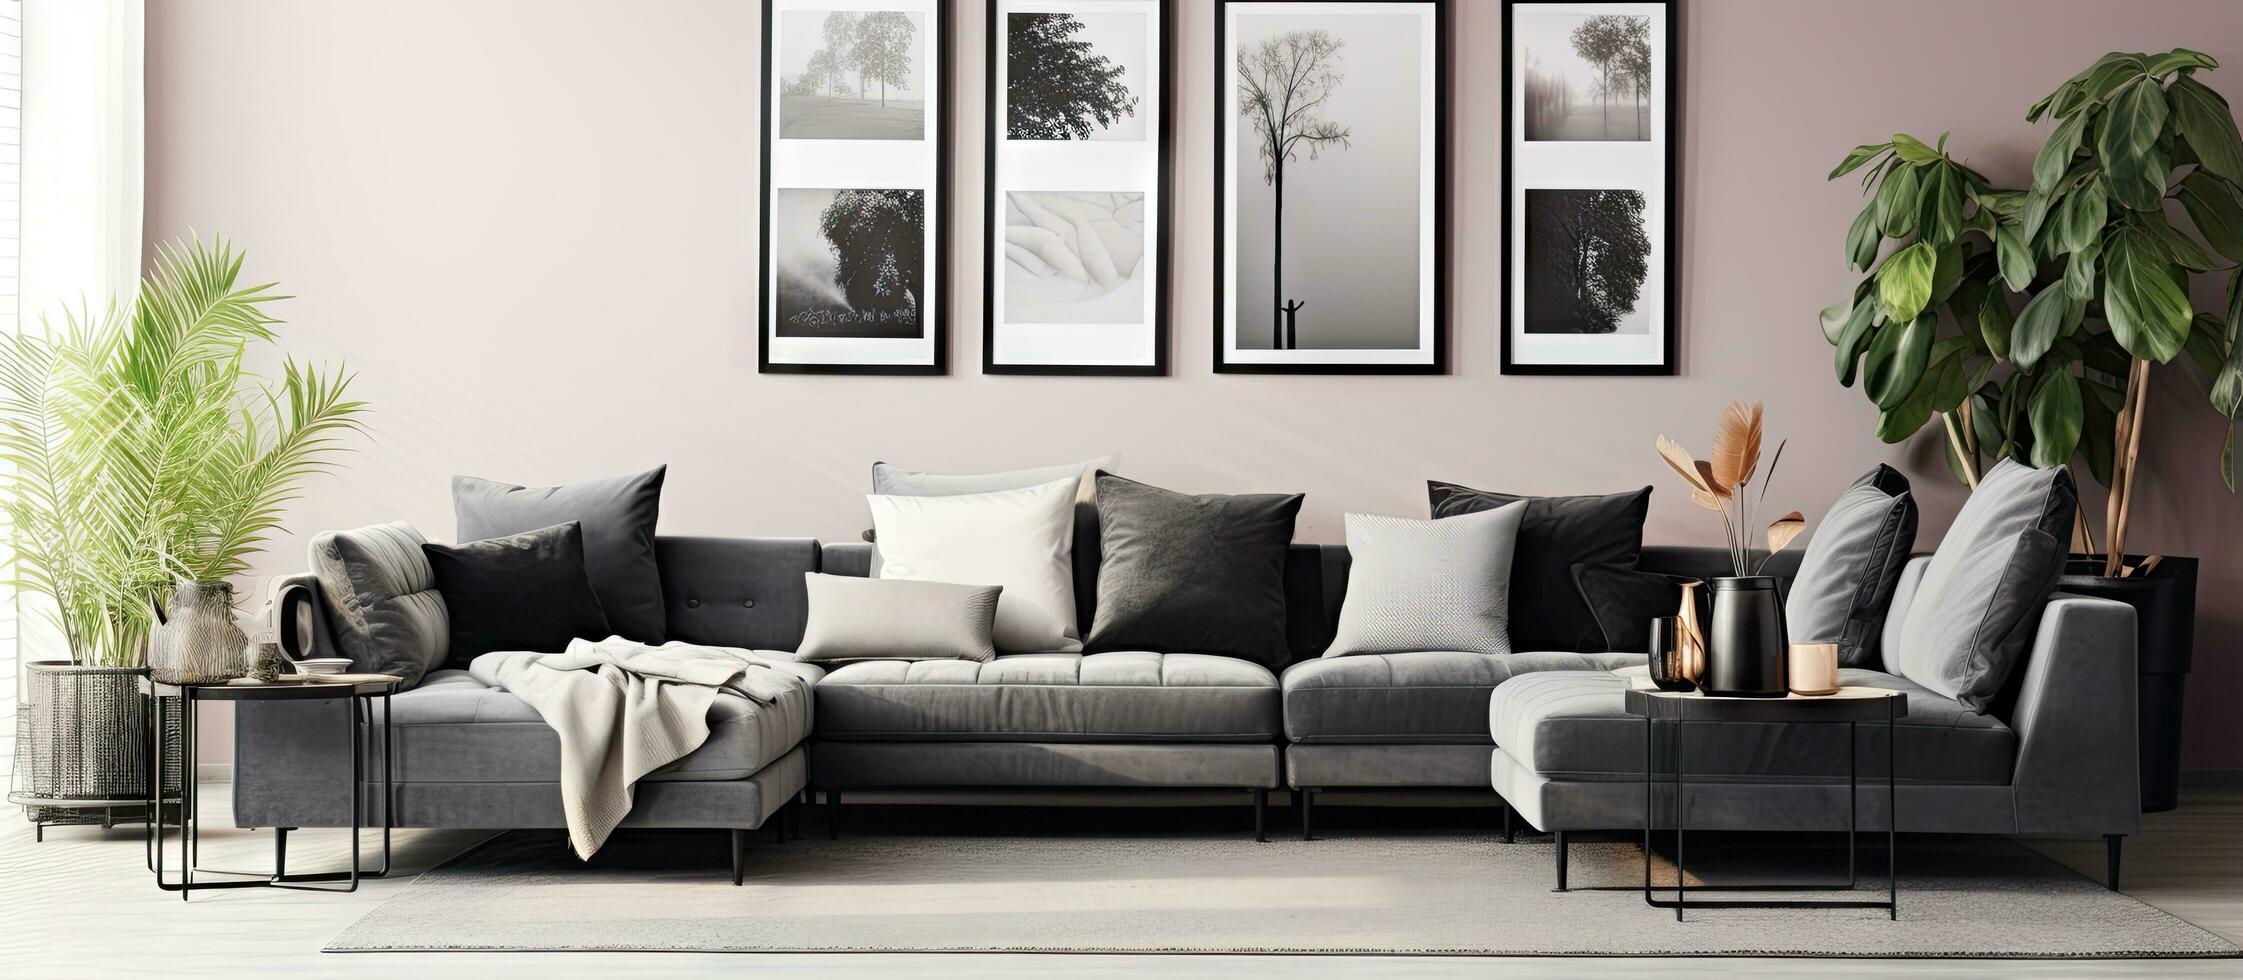 minimaliste vivant pièce avec pastel noir et métallique argent Couleur 8 cadres sur le mur ameublement et les plantes ment affiche Galerie mur photo